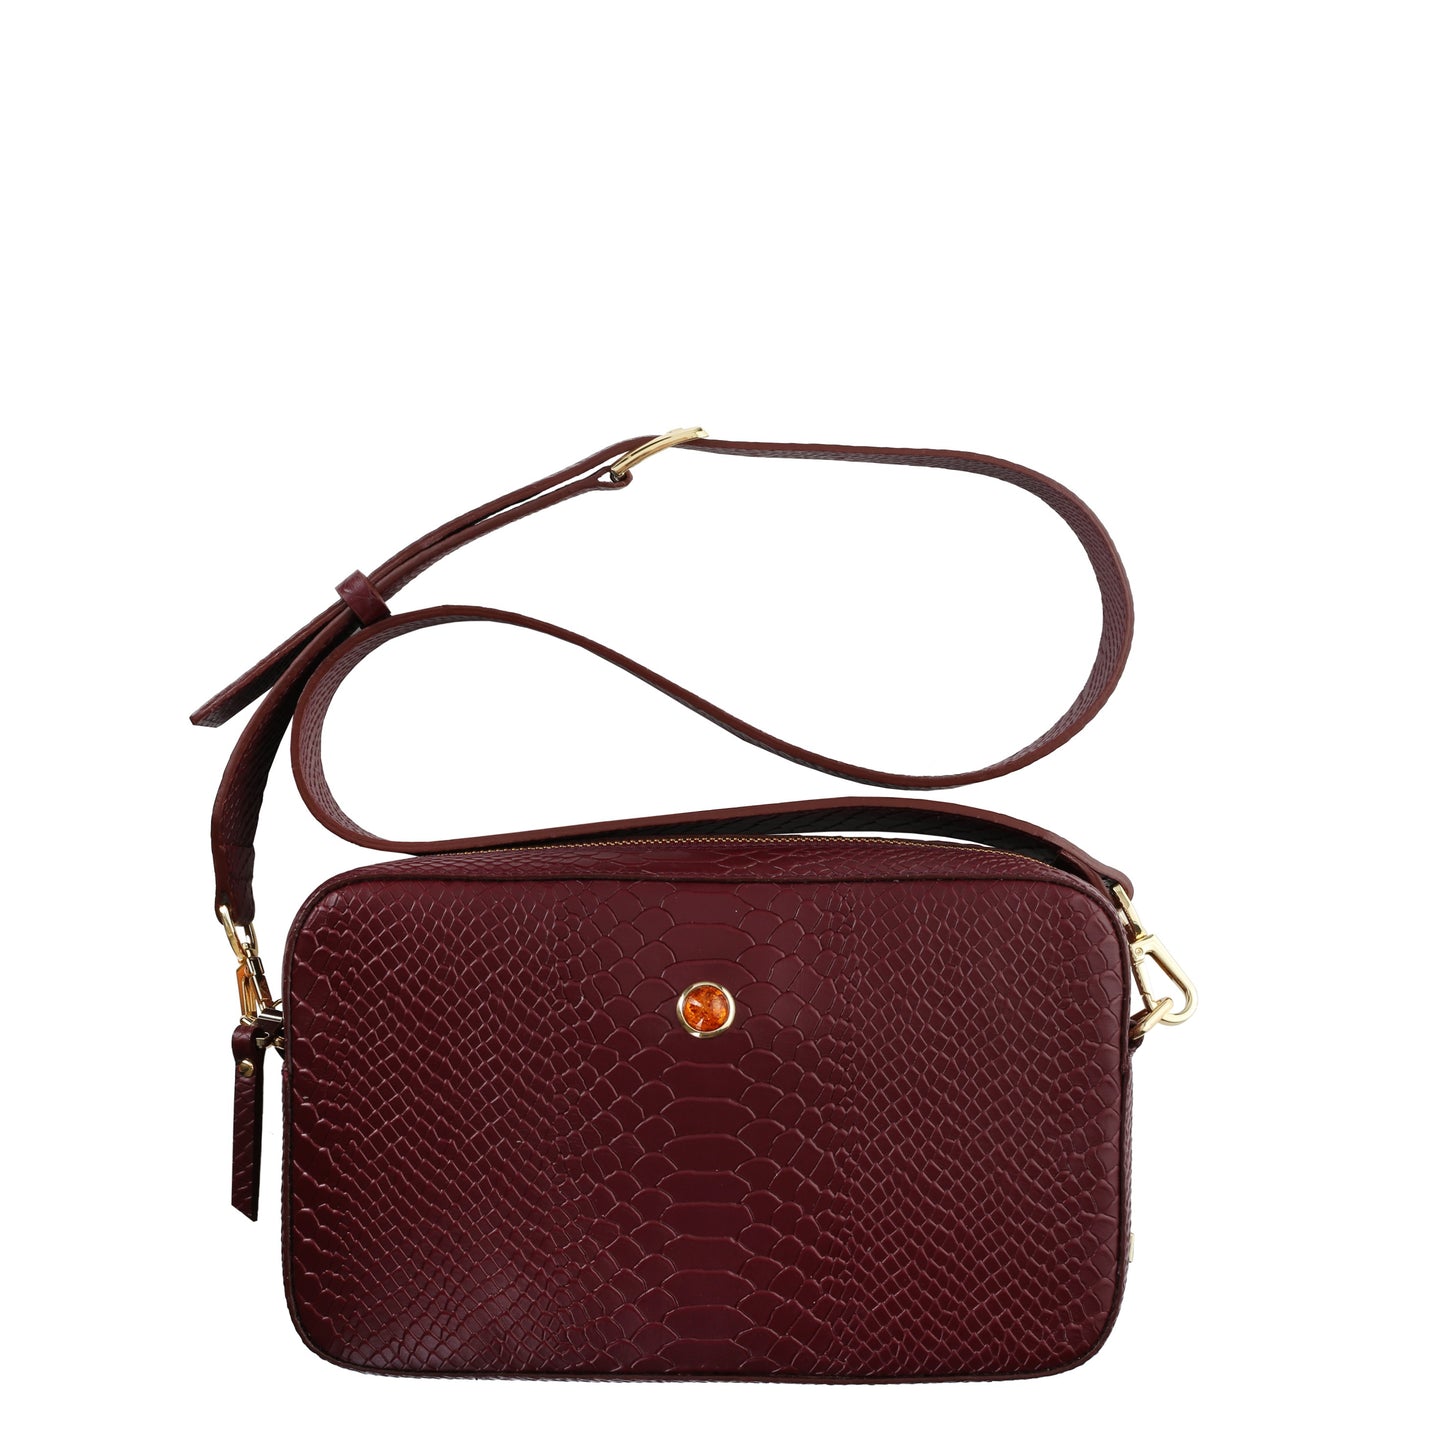 ALFIE CLARET women's leather handbag